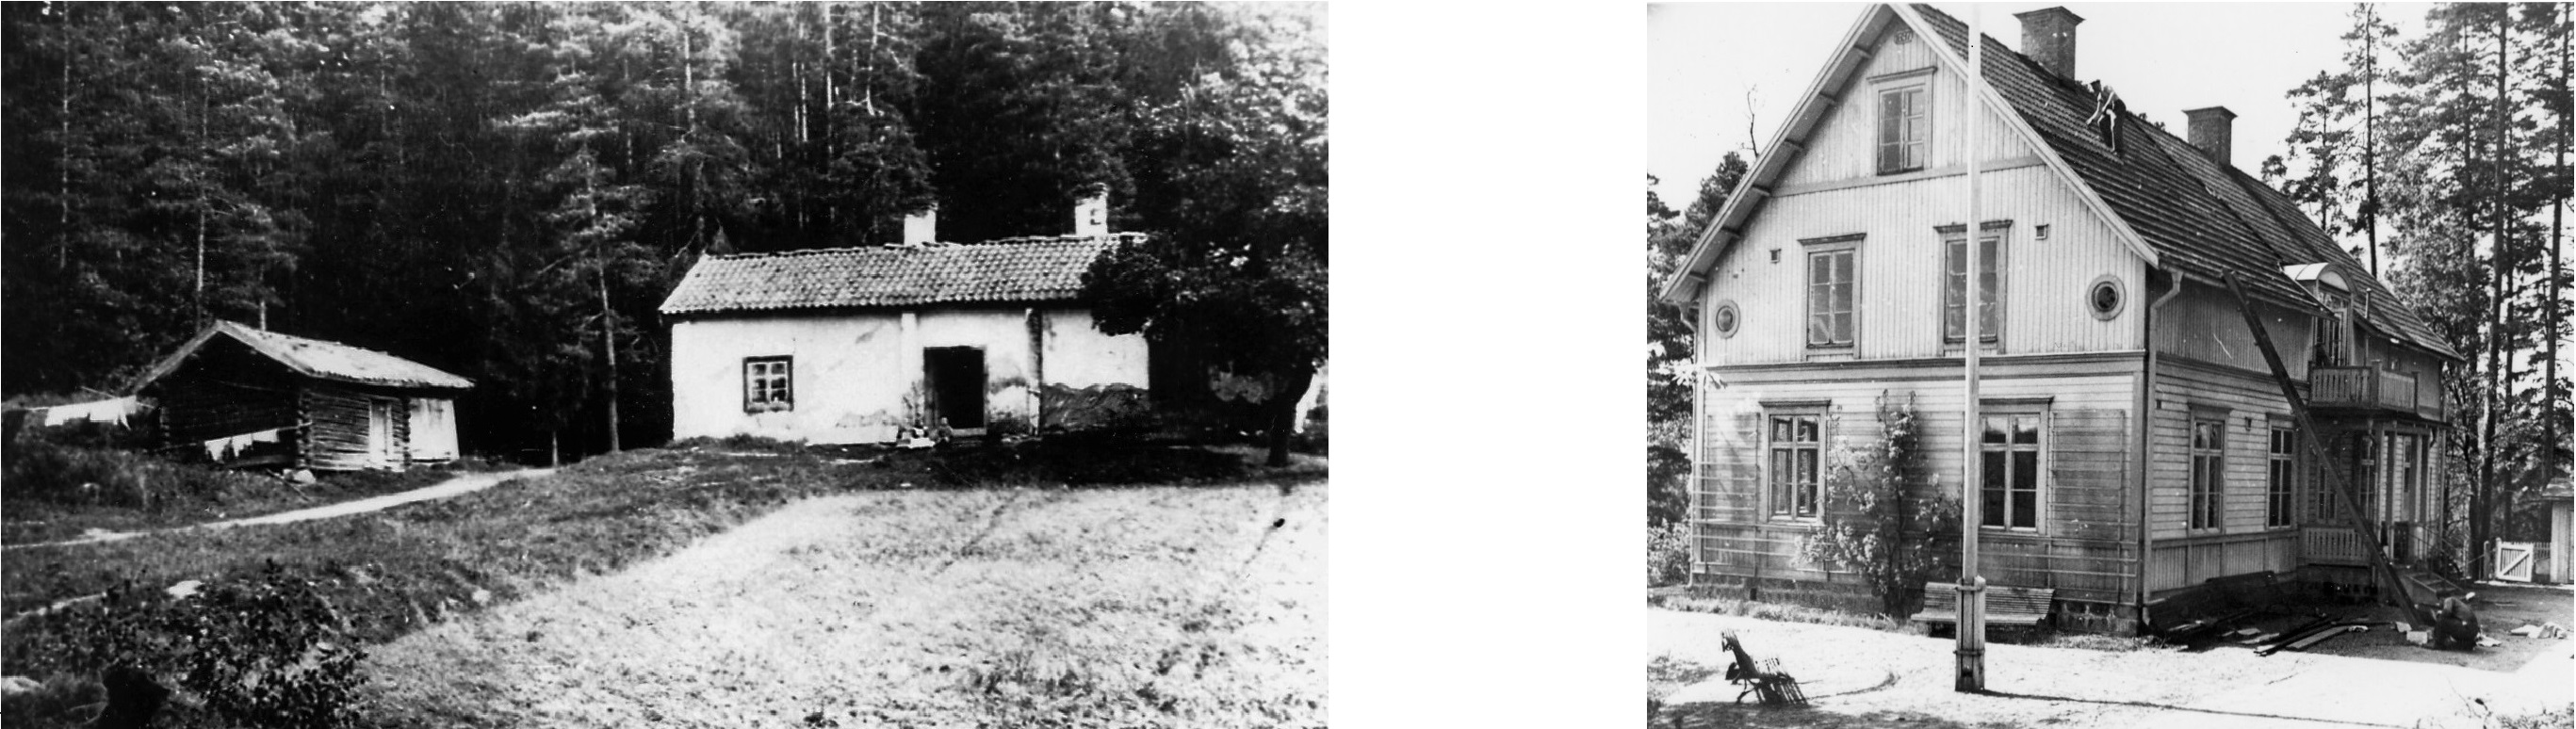 Fälleberg till vänster, revs när Fagersta stenskola byggdes 1909. foto 1903. Tallebo till höger, revs 1947